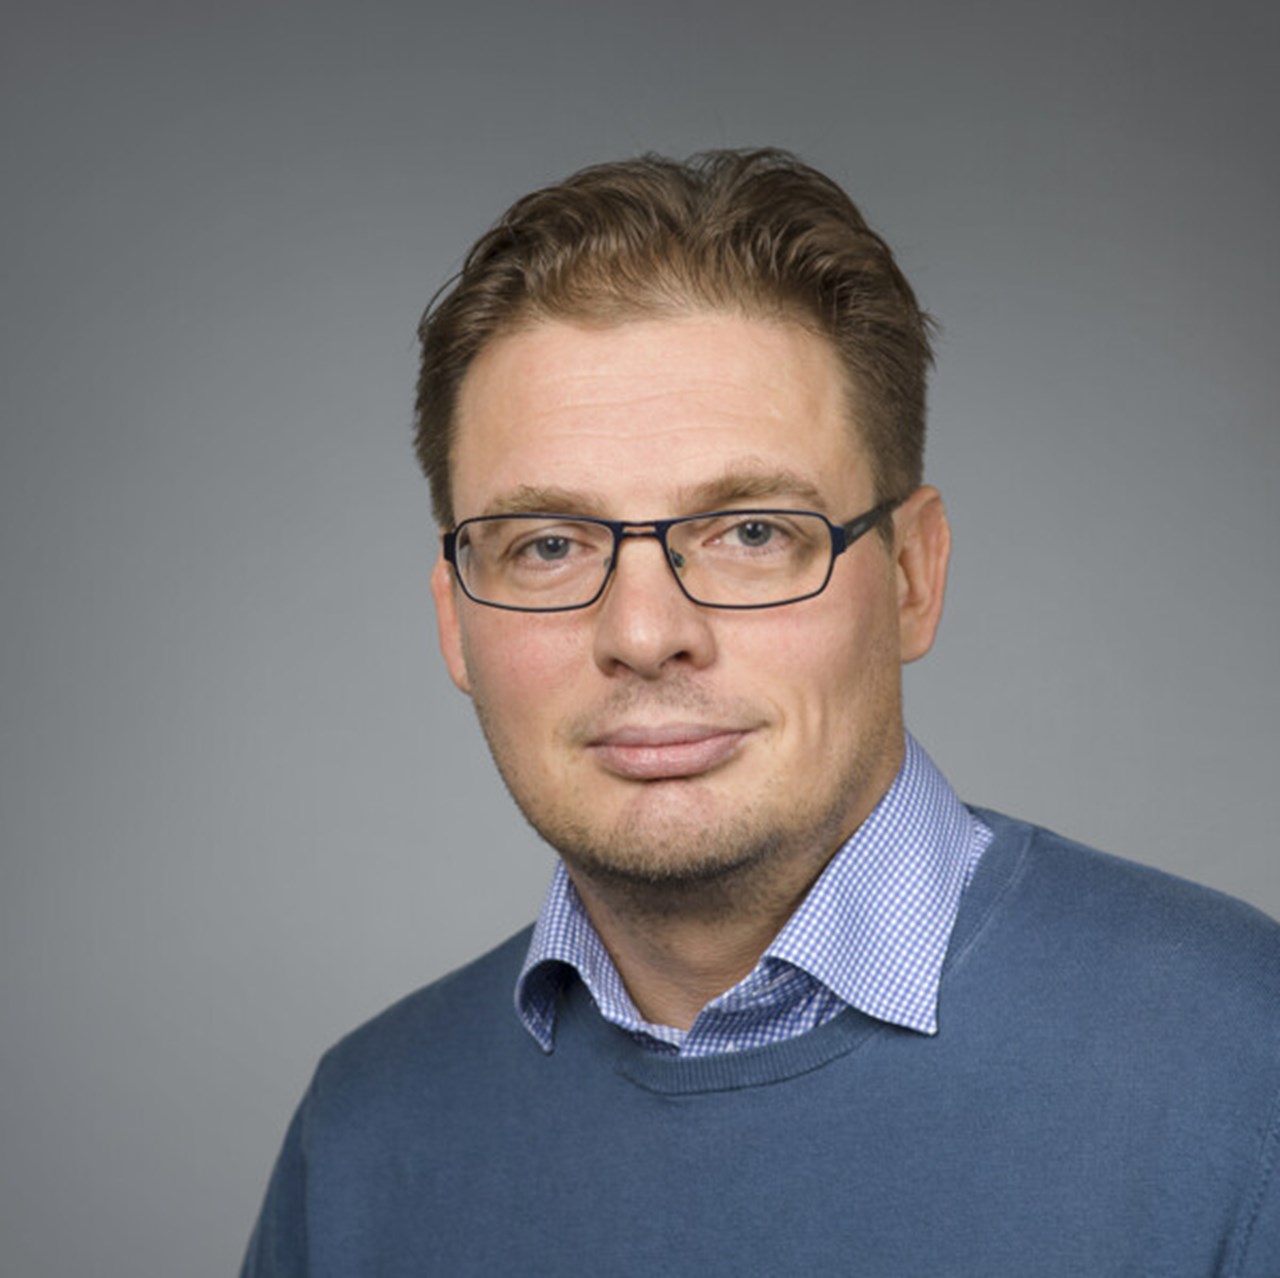 Porträtt på Patrik Ryden, Anknuten som universitetslektor vid Institutionen för matematik och matematisk statistik, Umeå universitet